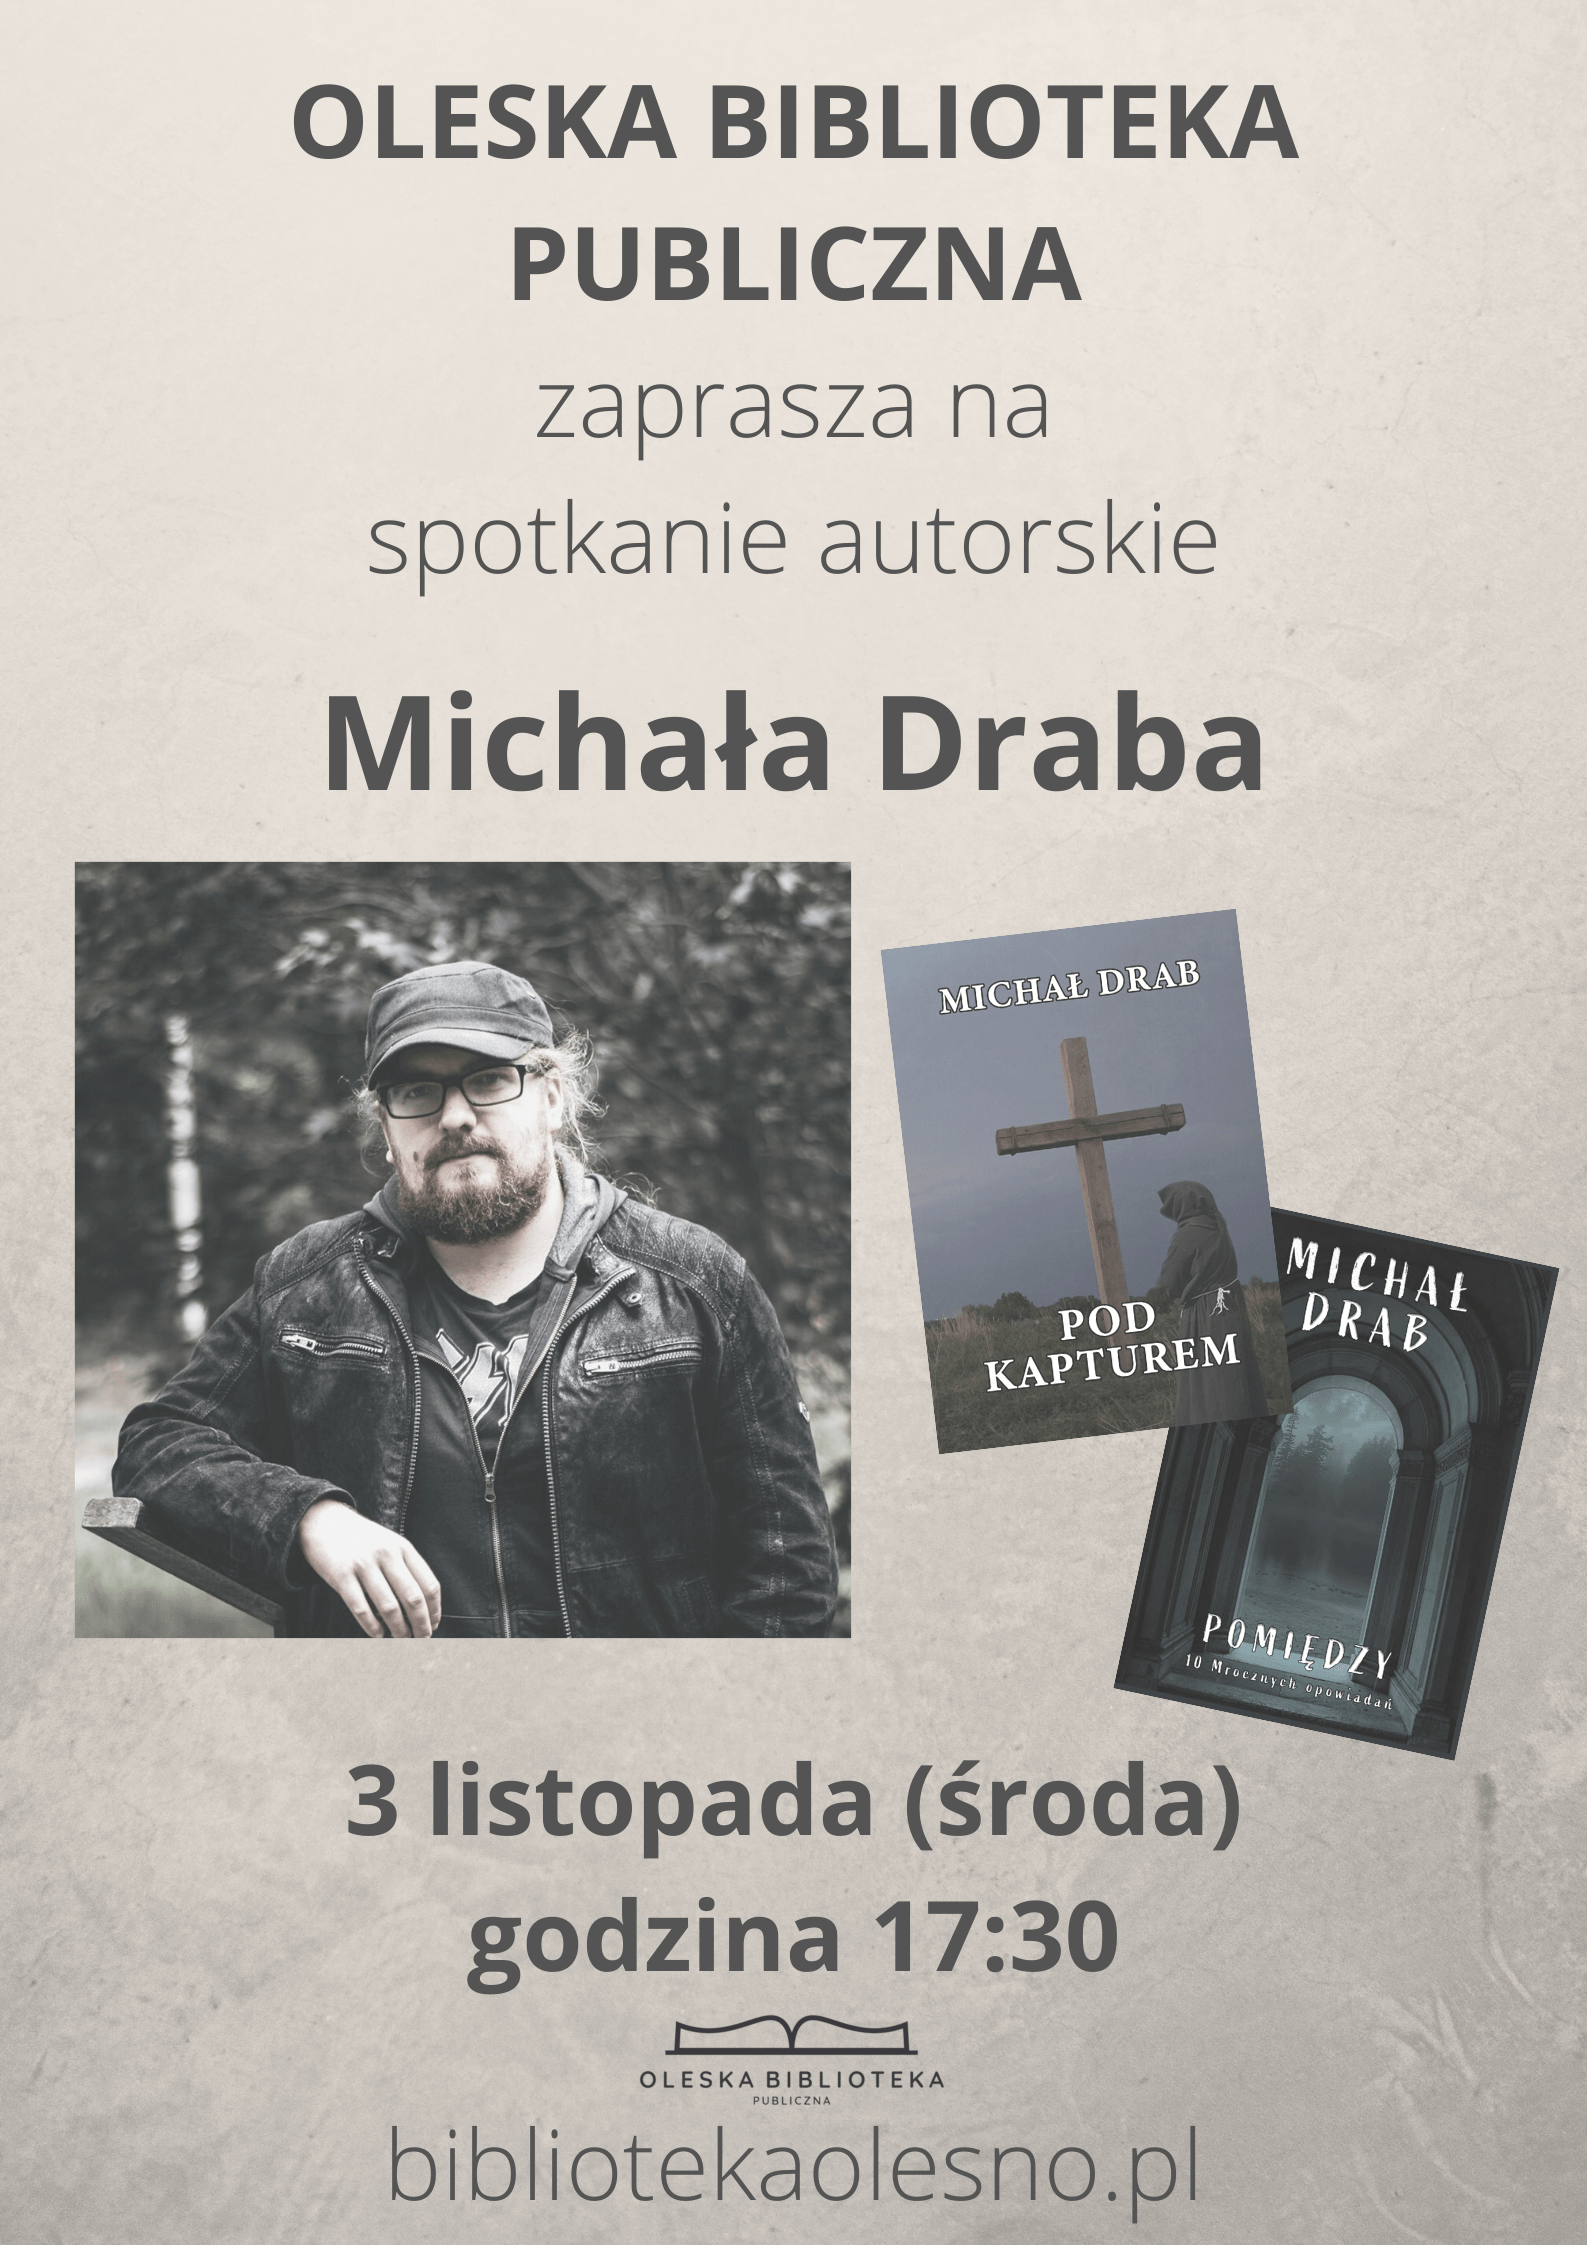 Michał Drab - spotkanie autorskie, 3 XI 2021